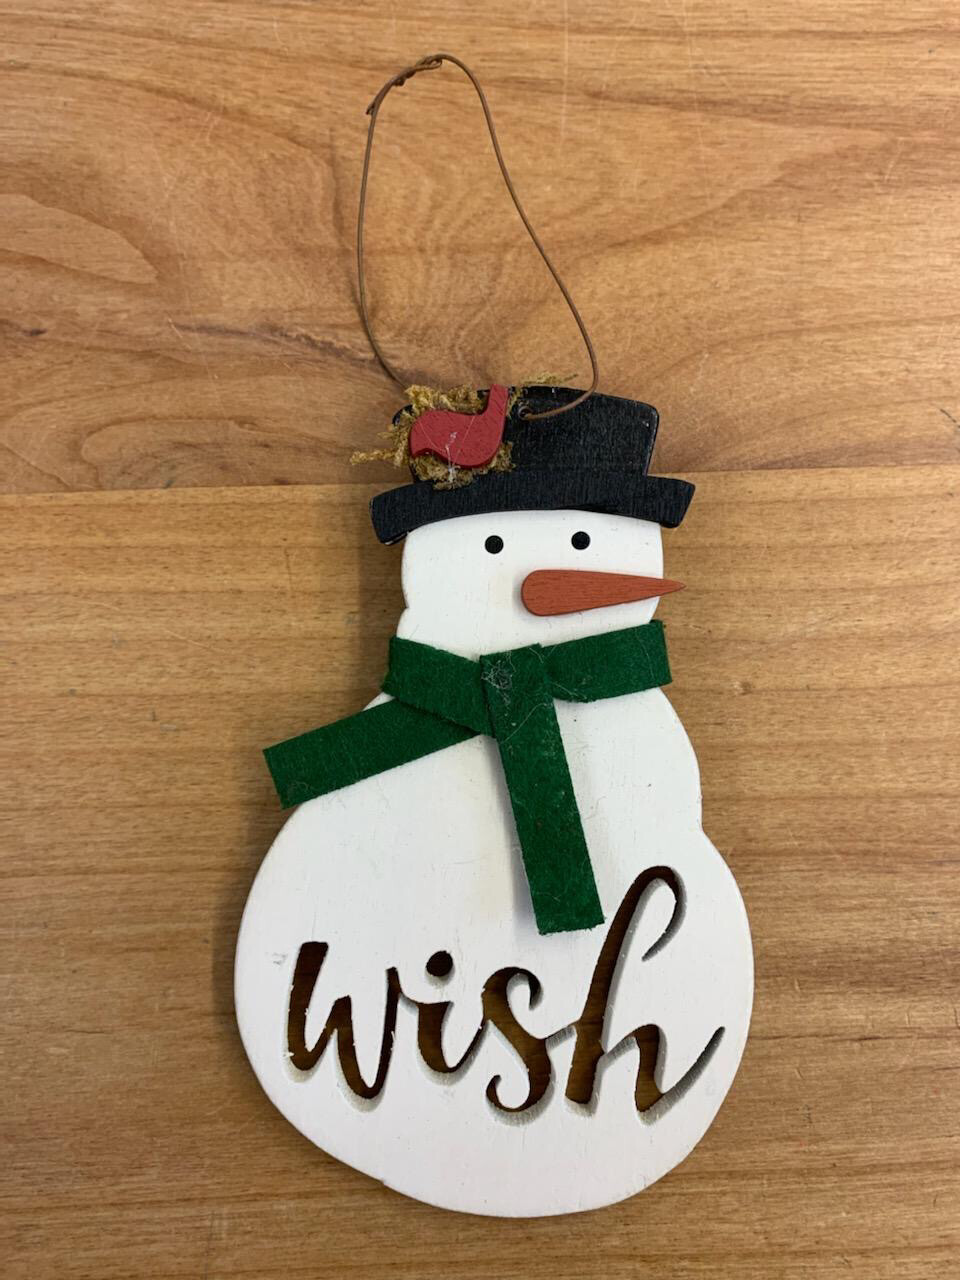 Wish Snowman Ornament